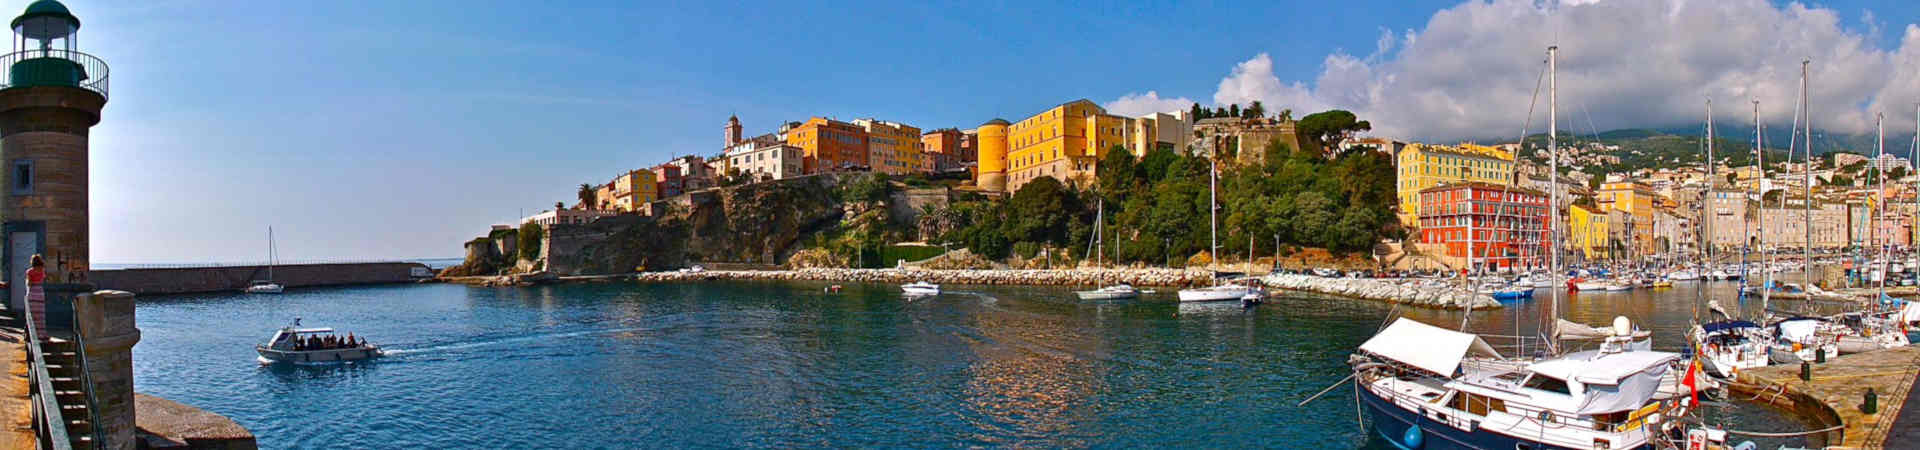 Imatge recurs del port de destinació Bastia per a la ruta en ferry Savona - Bastia